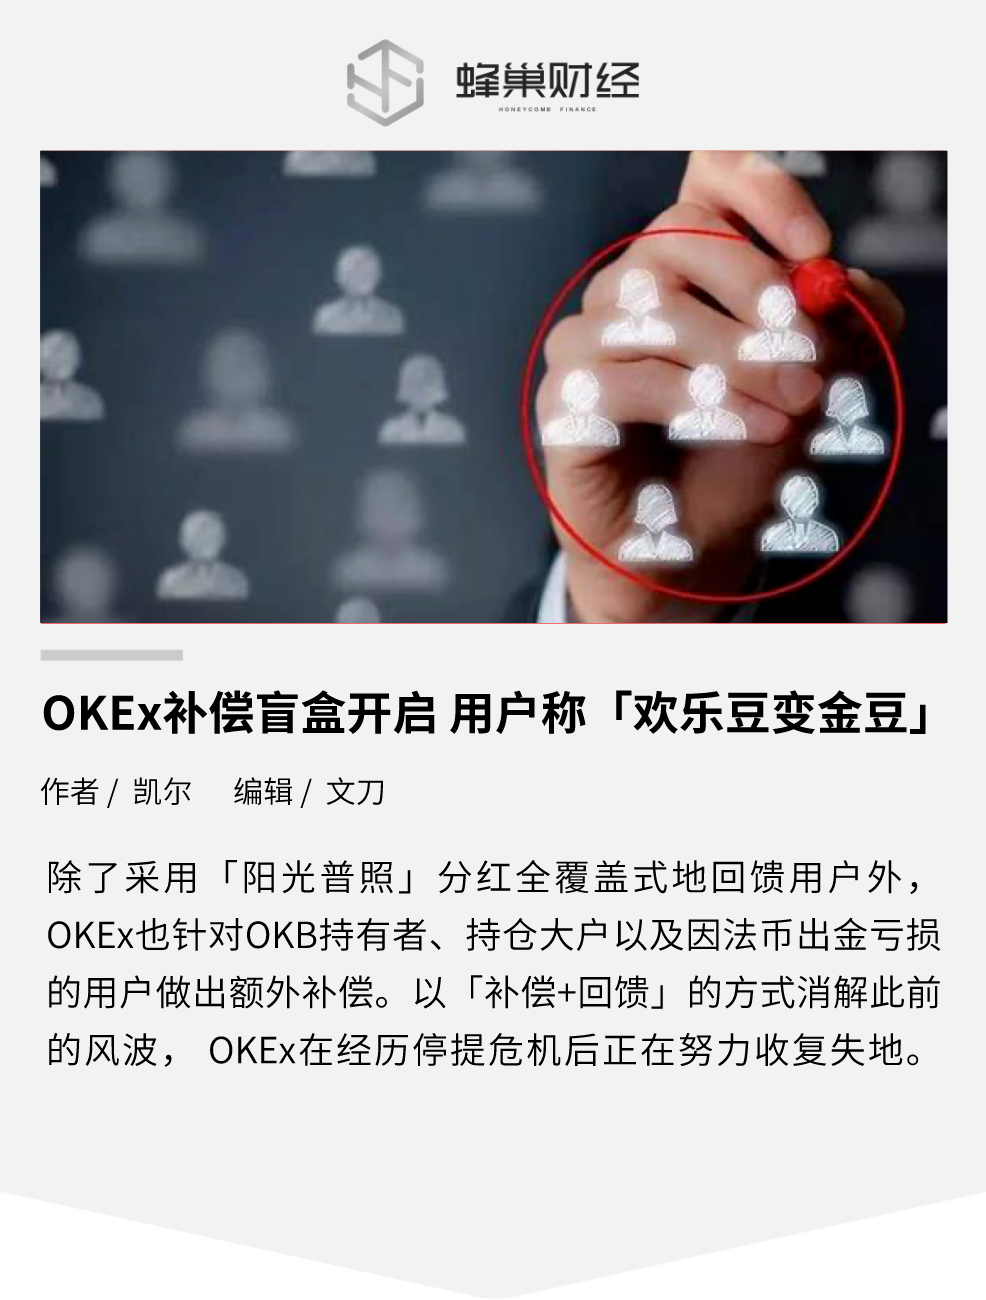 OKEx抵偿盲盒开启 用户称「欢跃豆变金豆」